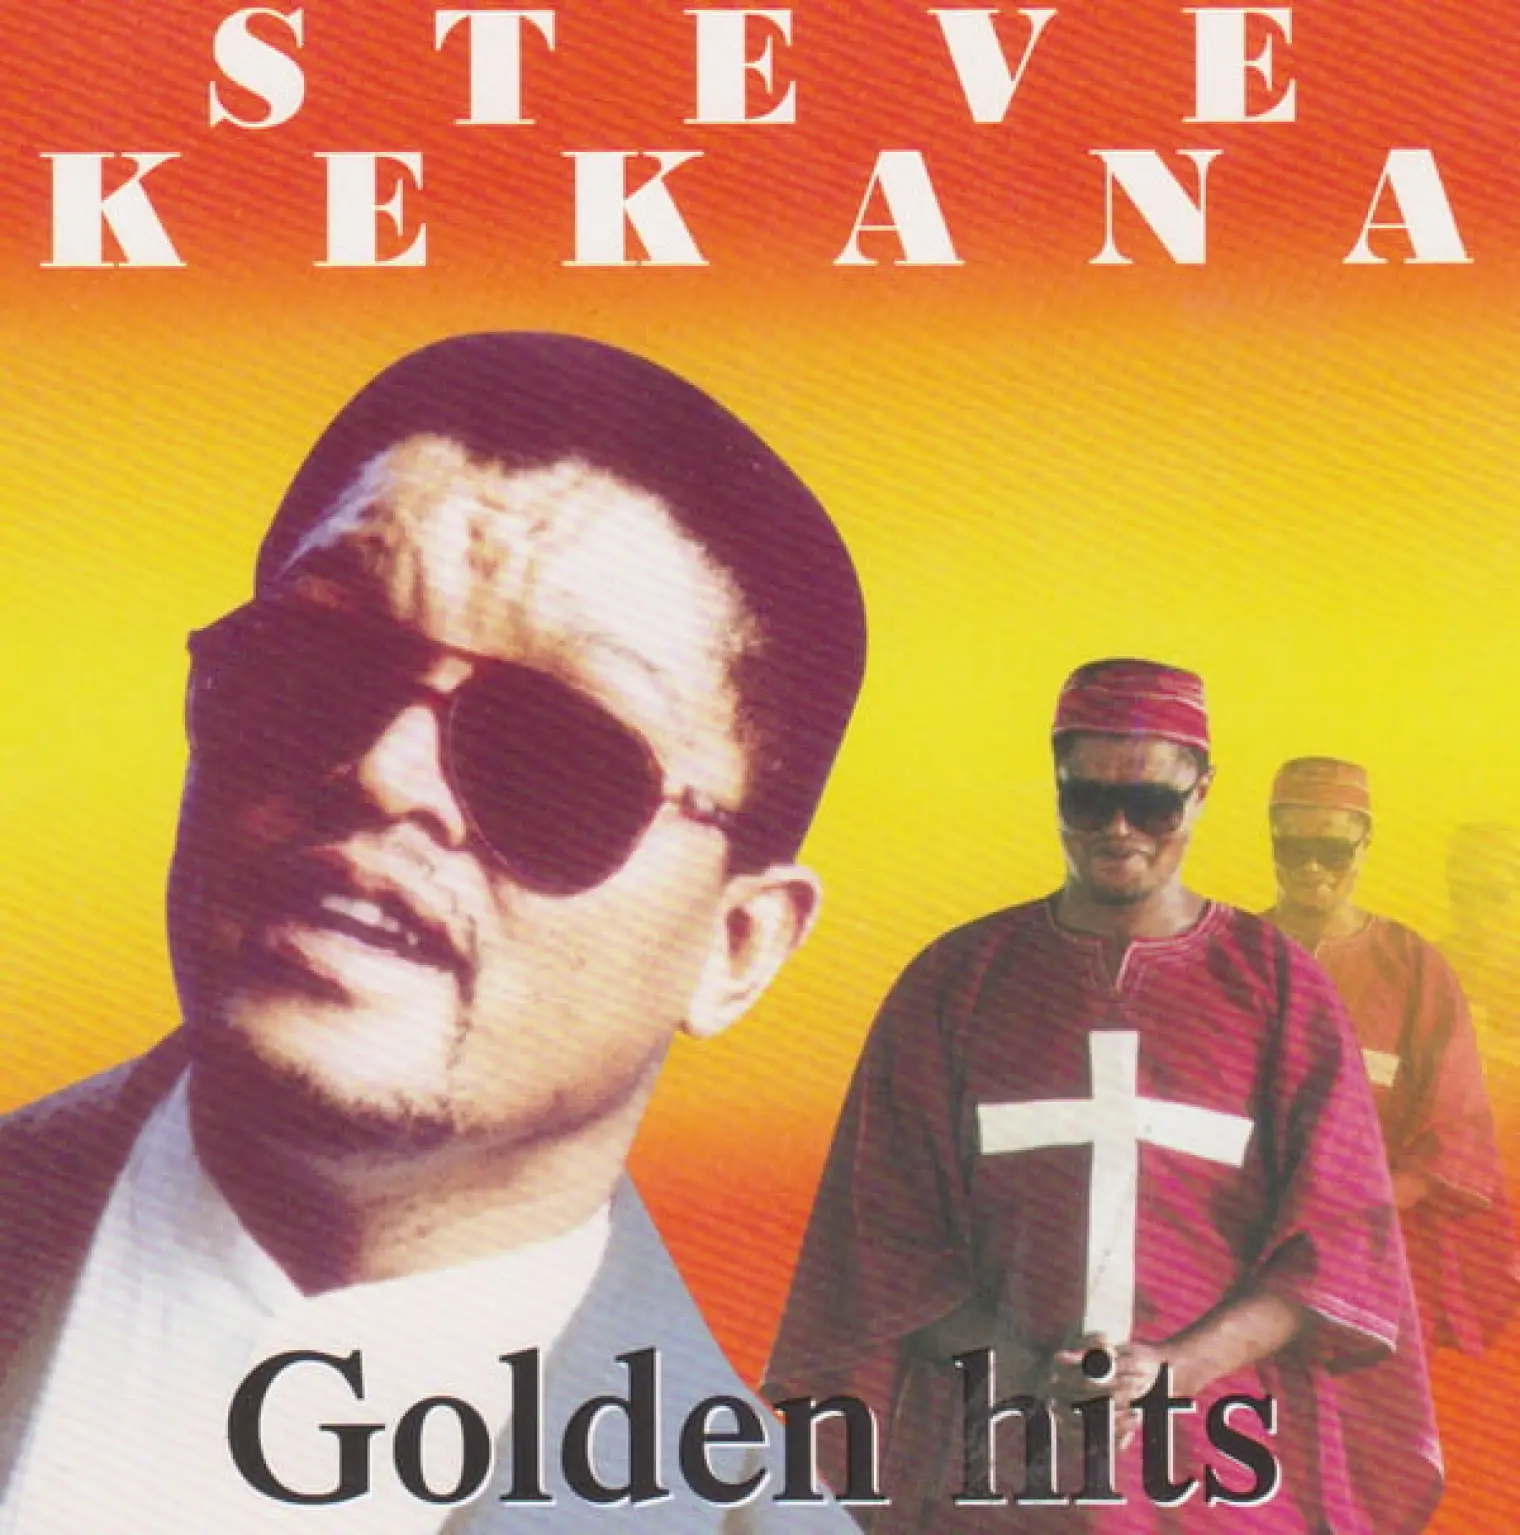 Golden Hits -  Steve Kekana 